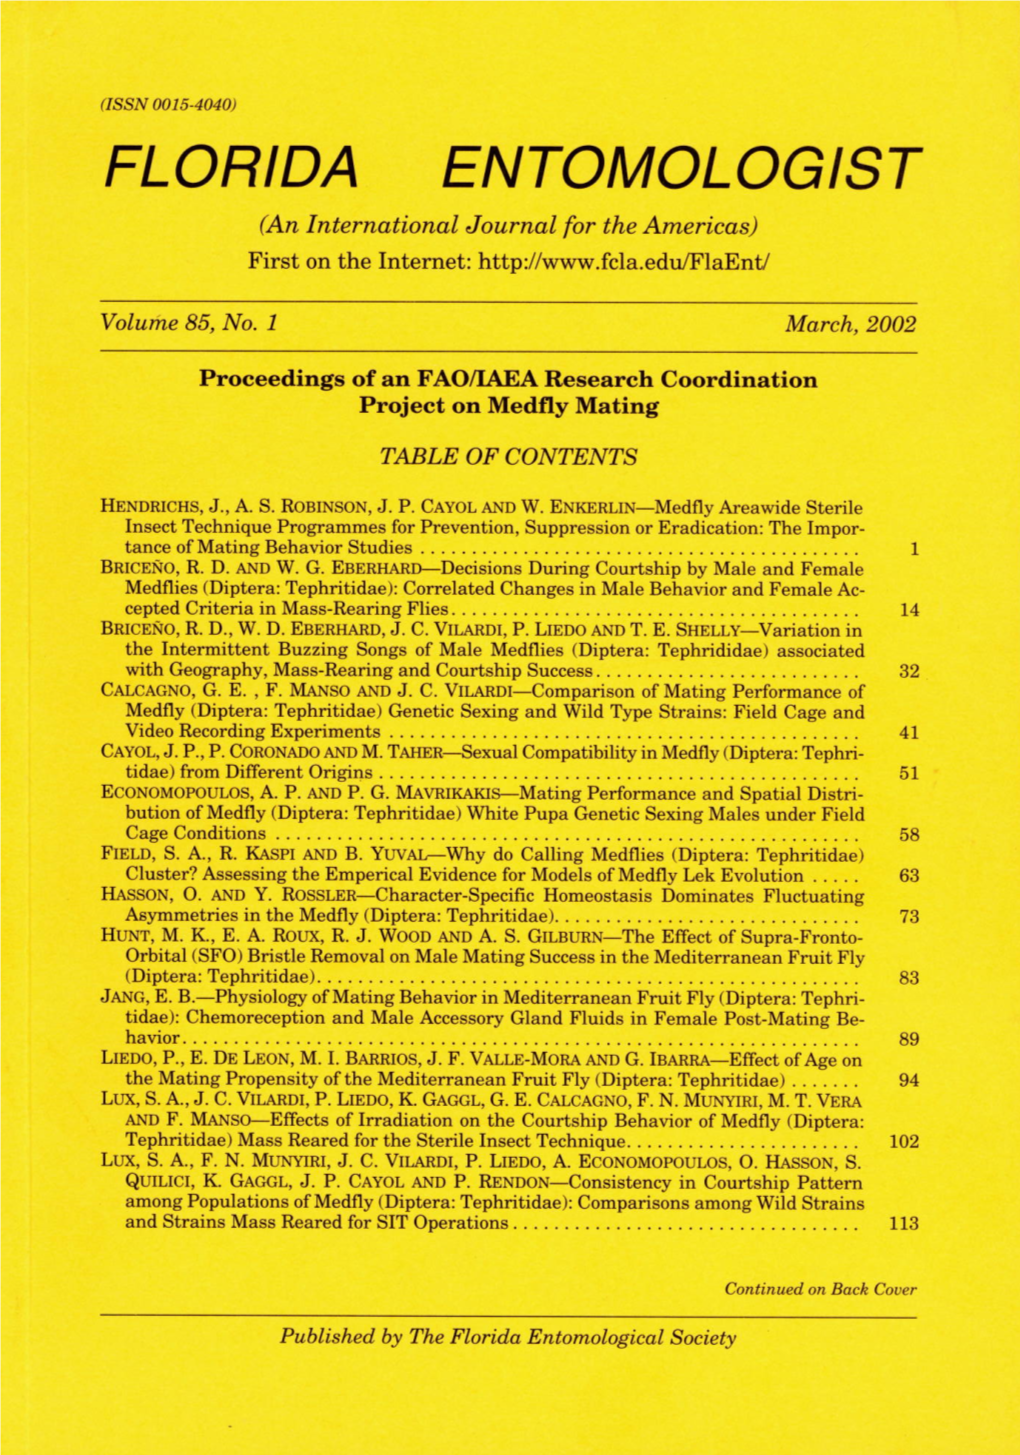 Hendrichs Et Al.: Medfly Mating Behavior Studies 1